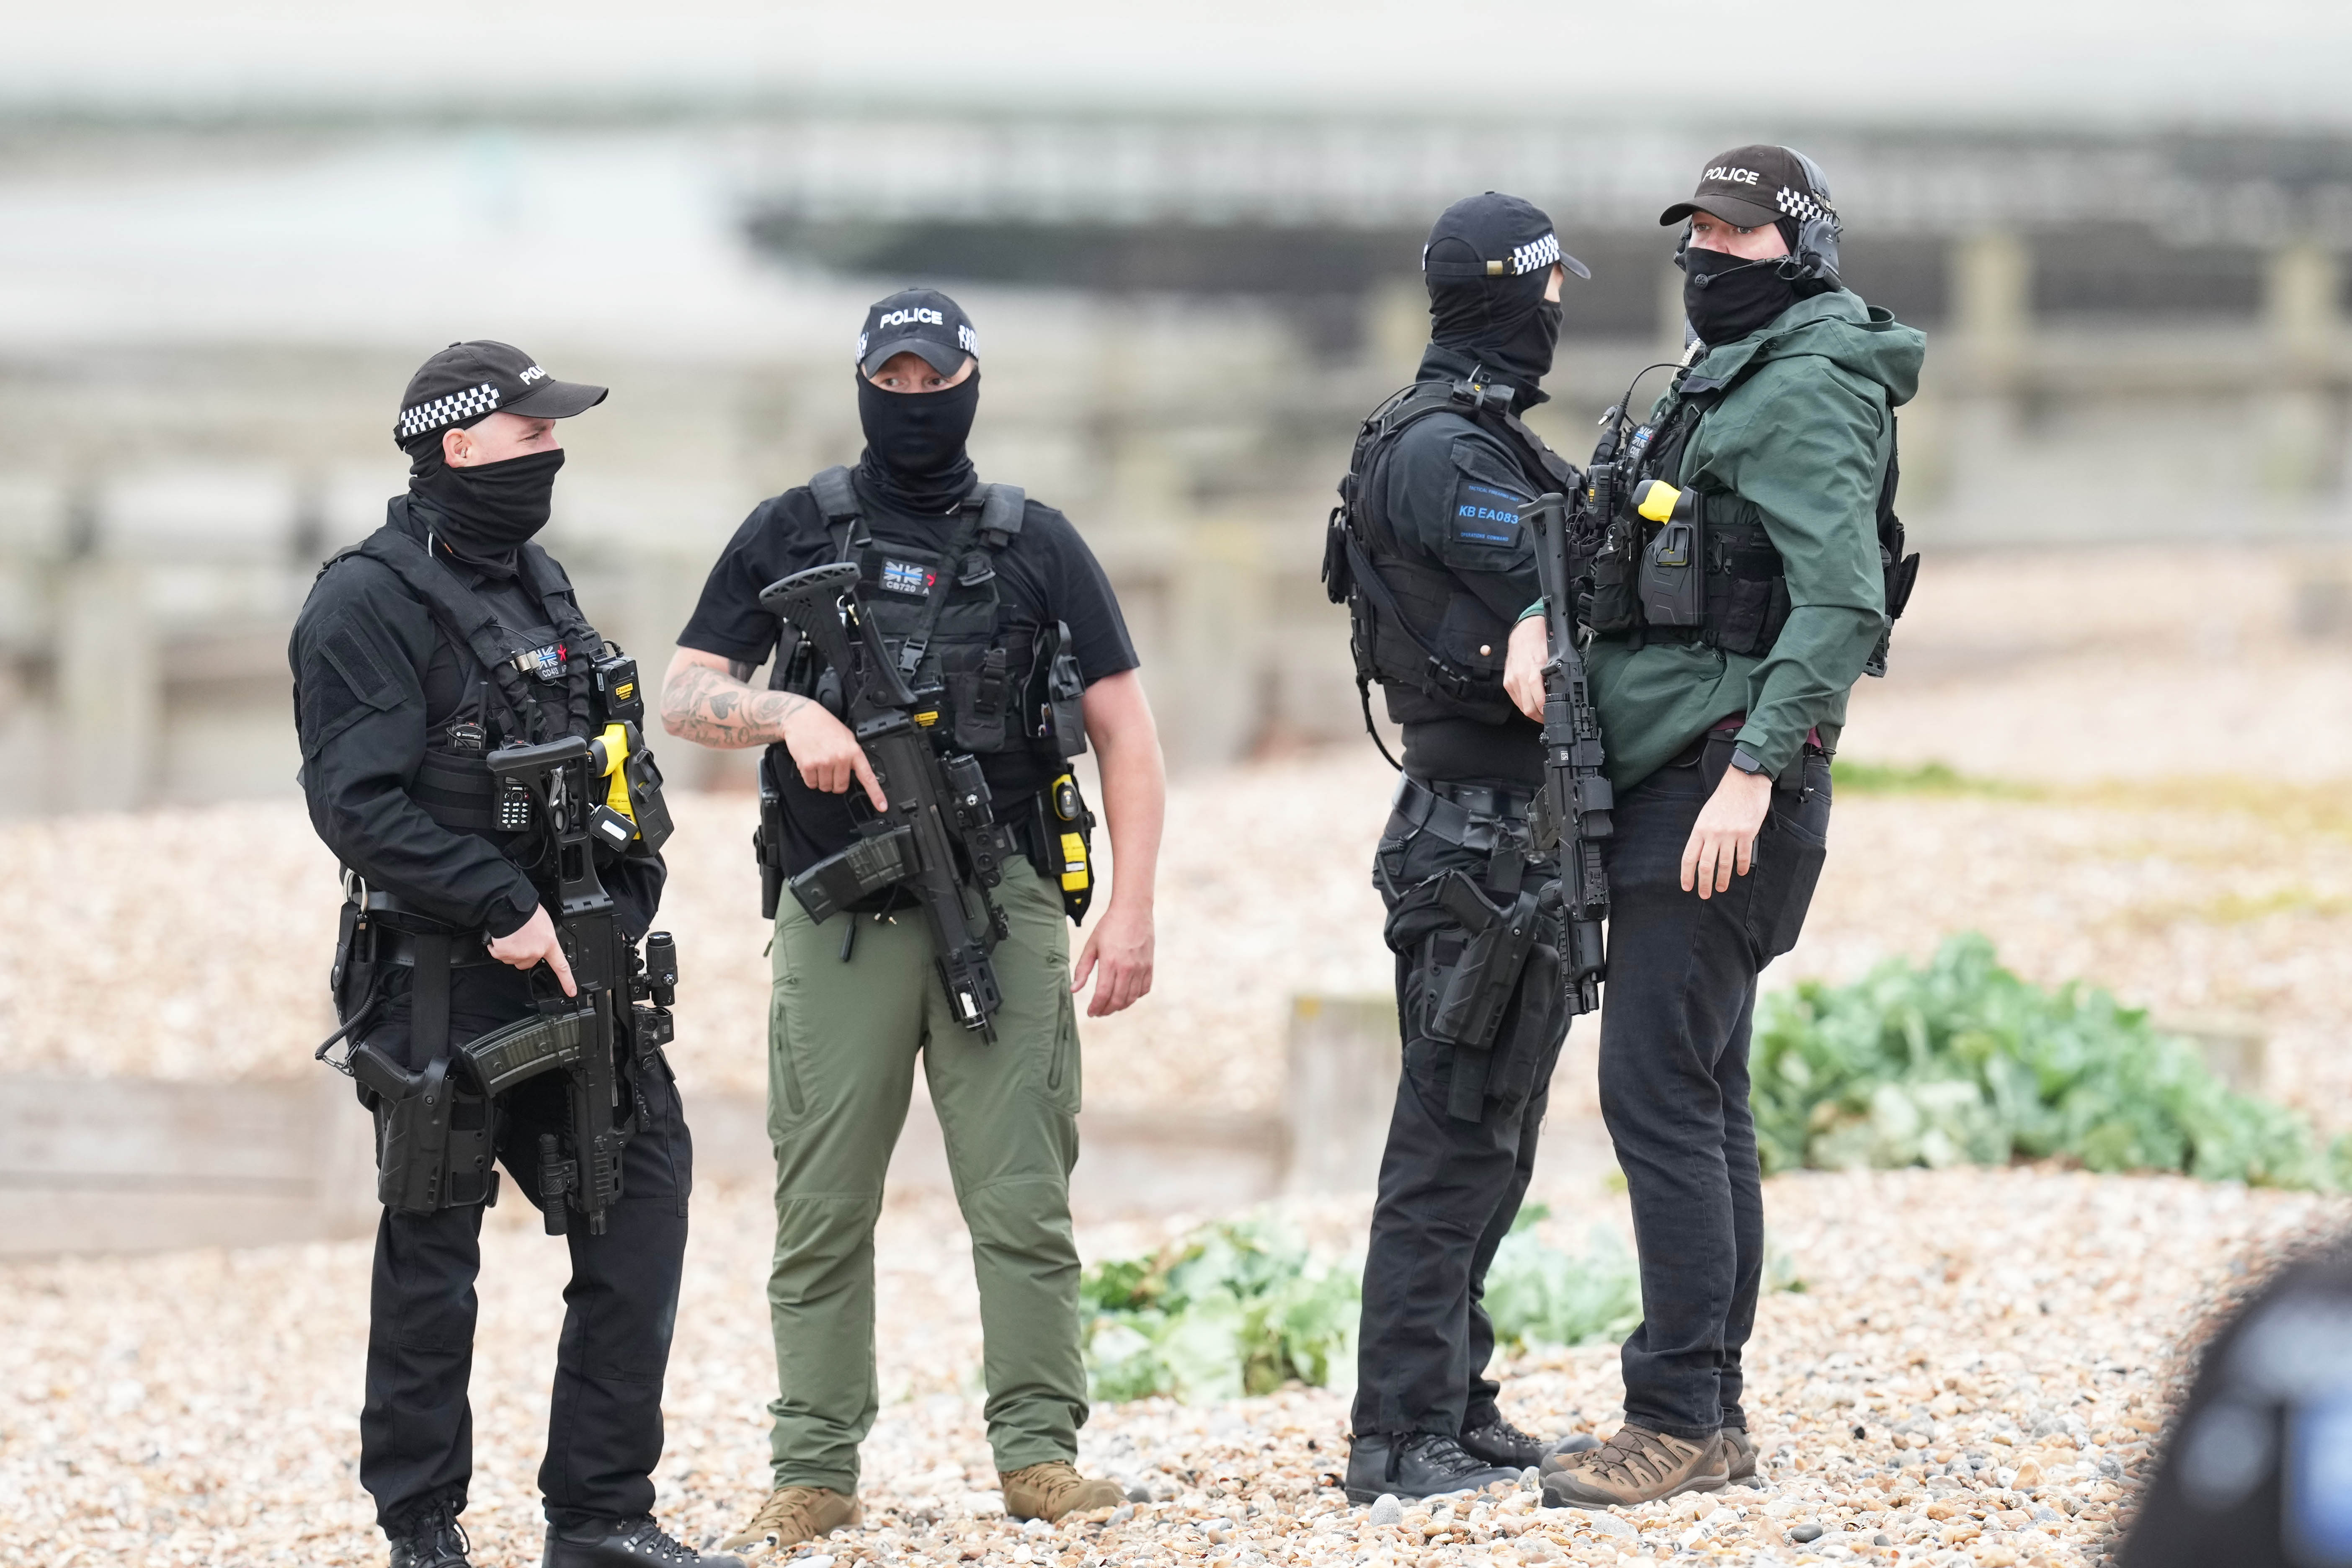 Bewaffnete Polizisten mit Gesichtsbedeckungen riegelten das Gebiet ab, während die Kokainbeute, von der angenommen wurde, dass sie 20 kg wog, geborgen wurde